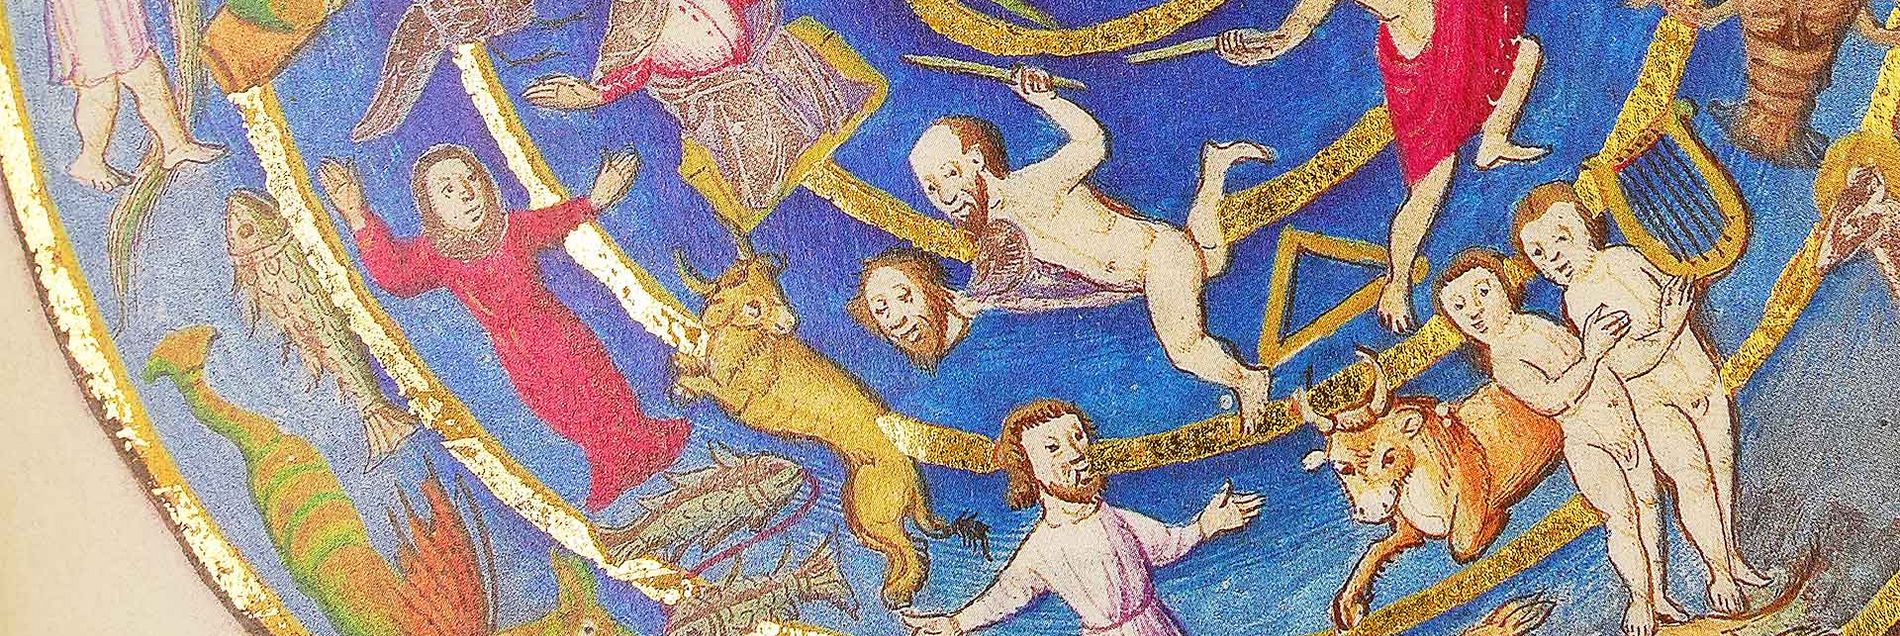 <i>“Antike Mythologie und die Astronomie des Aratos von Soloi in 40 goldgeschmückten Renaissance-Miniaturen”</i>